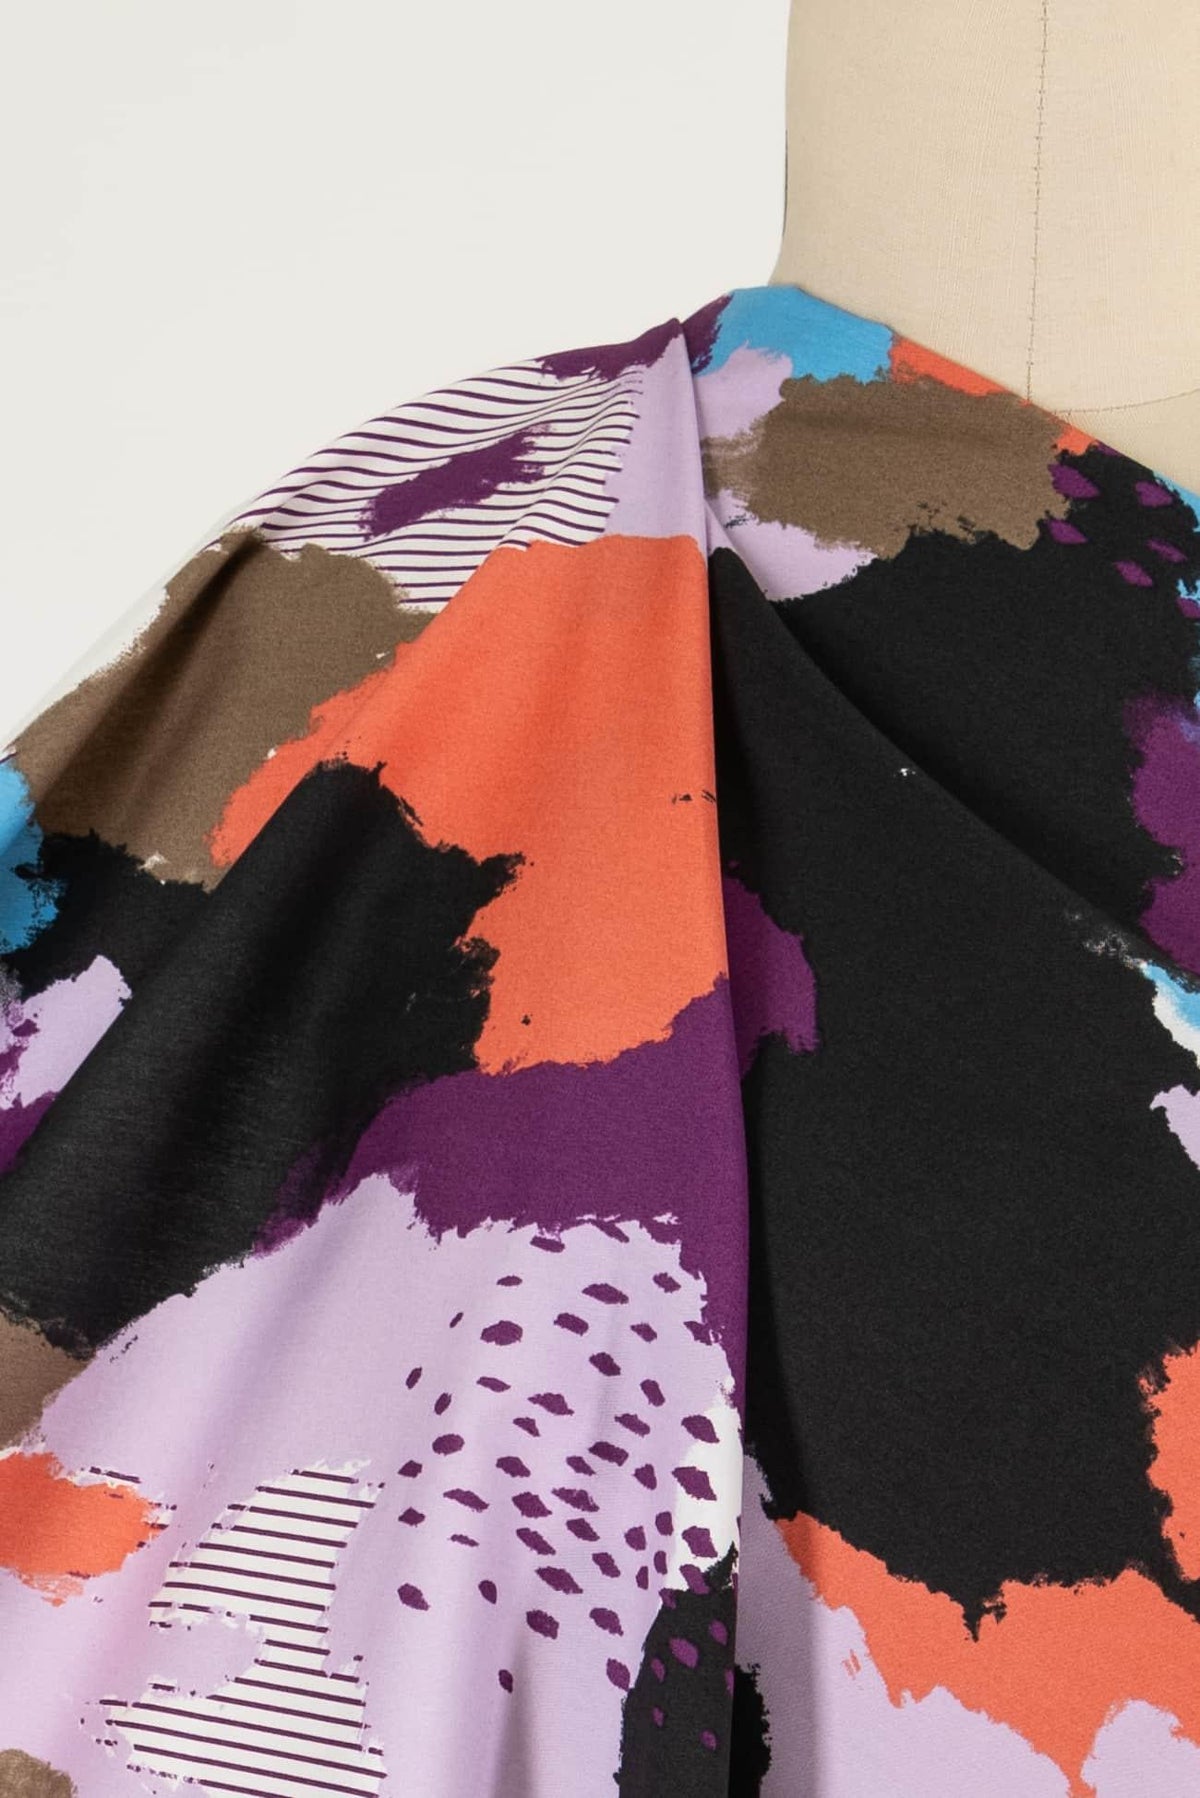 Rainbow Gathering Japanese Cotton Woven - Marcy Tilton Fabrics